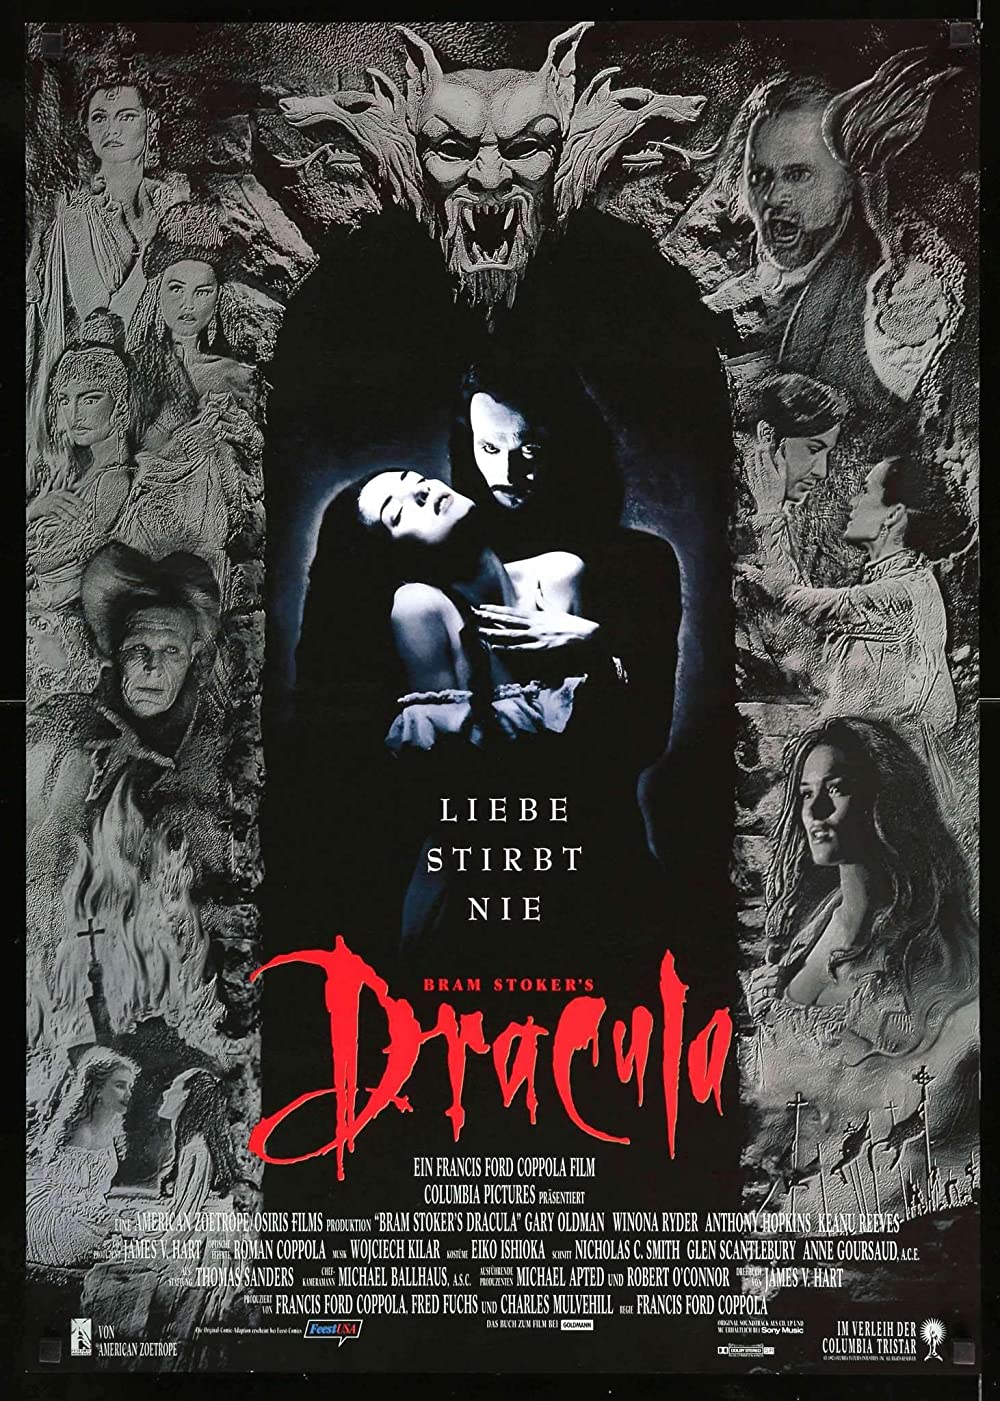 Filmbeschreibung zu Bram Stoker's Dracula